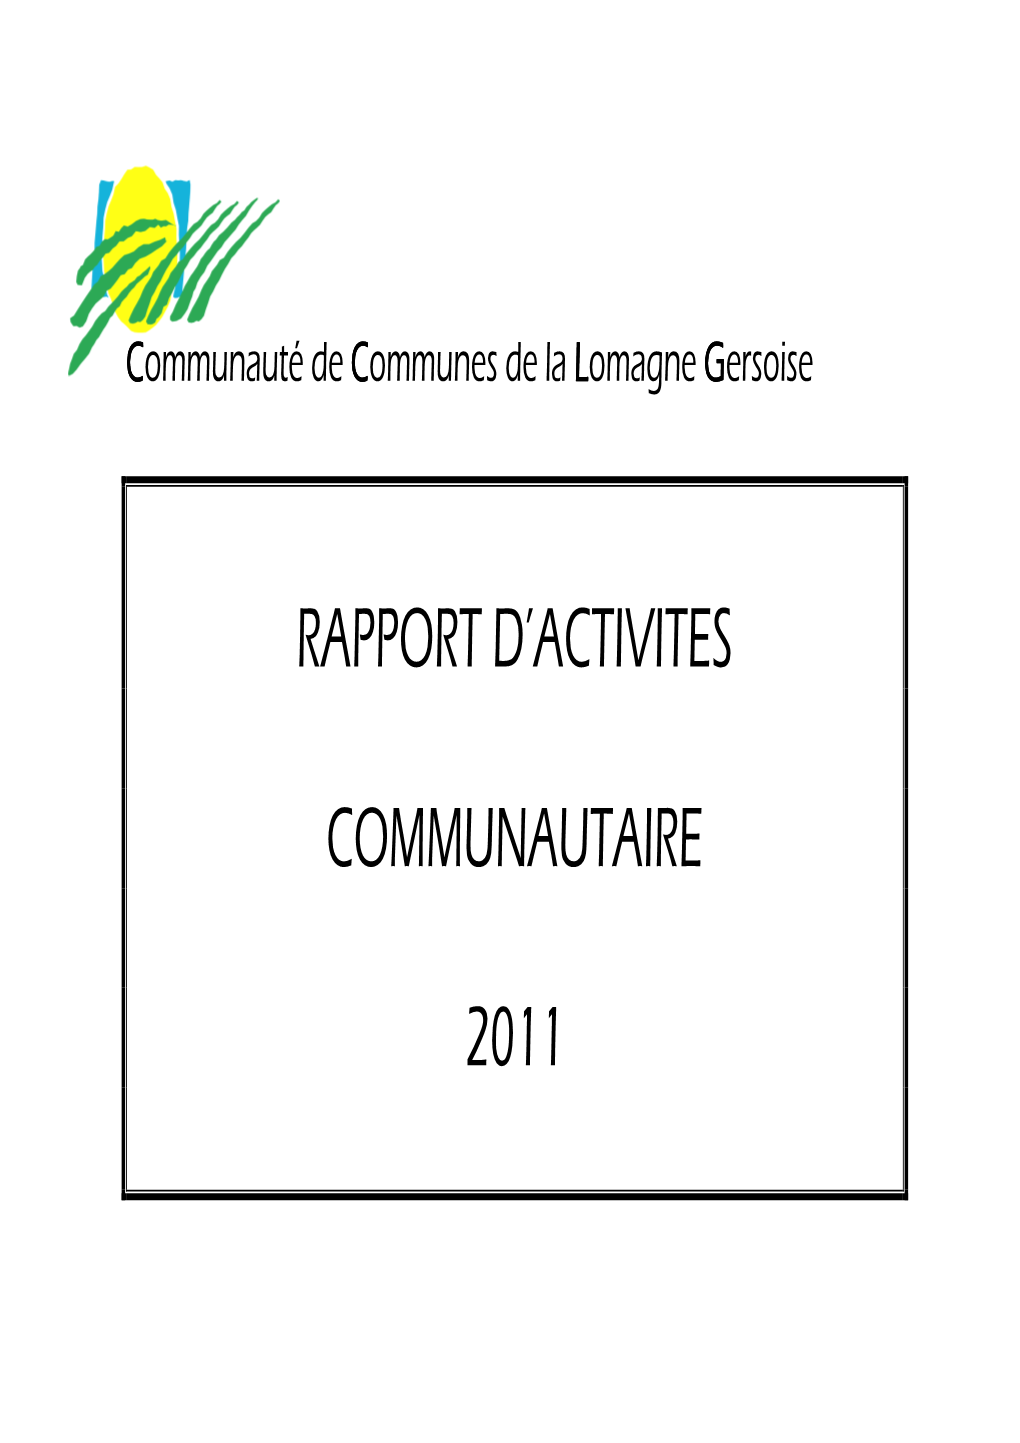 Rapport D'activites Communautaire 2011